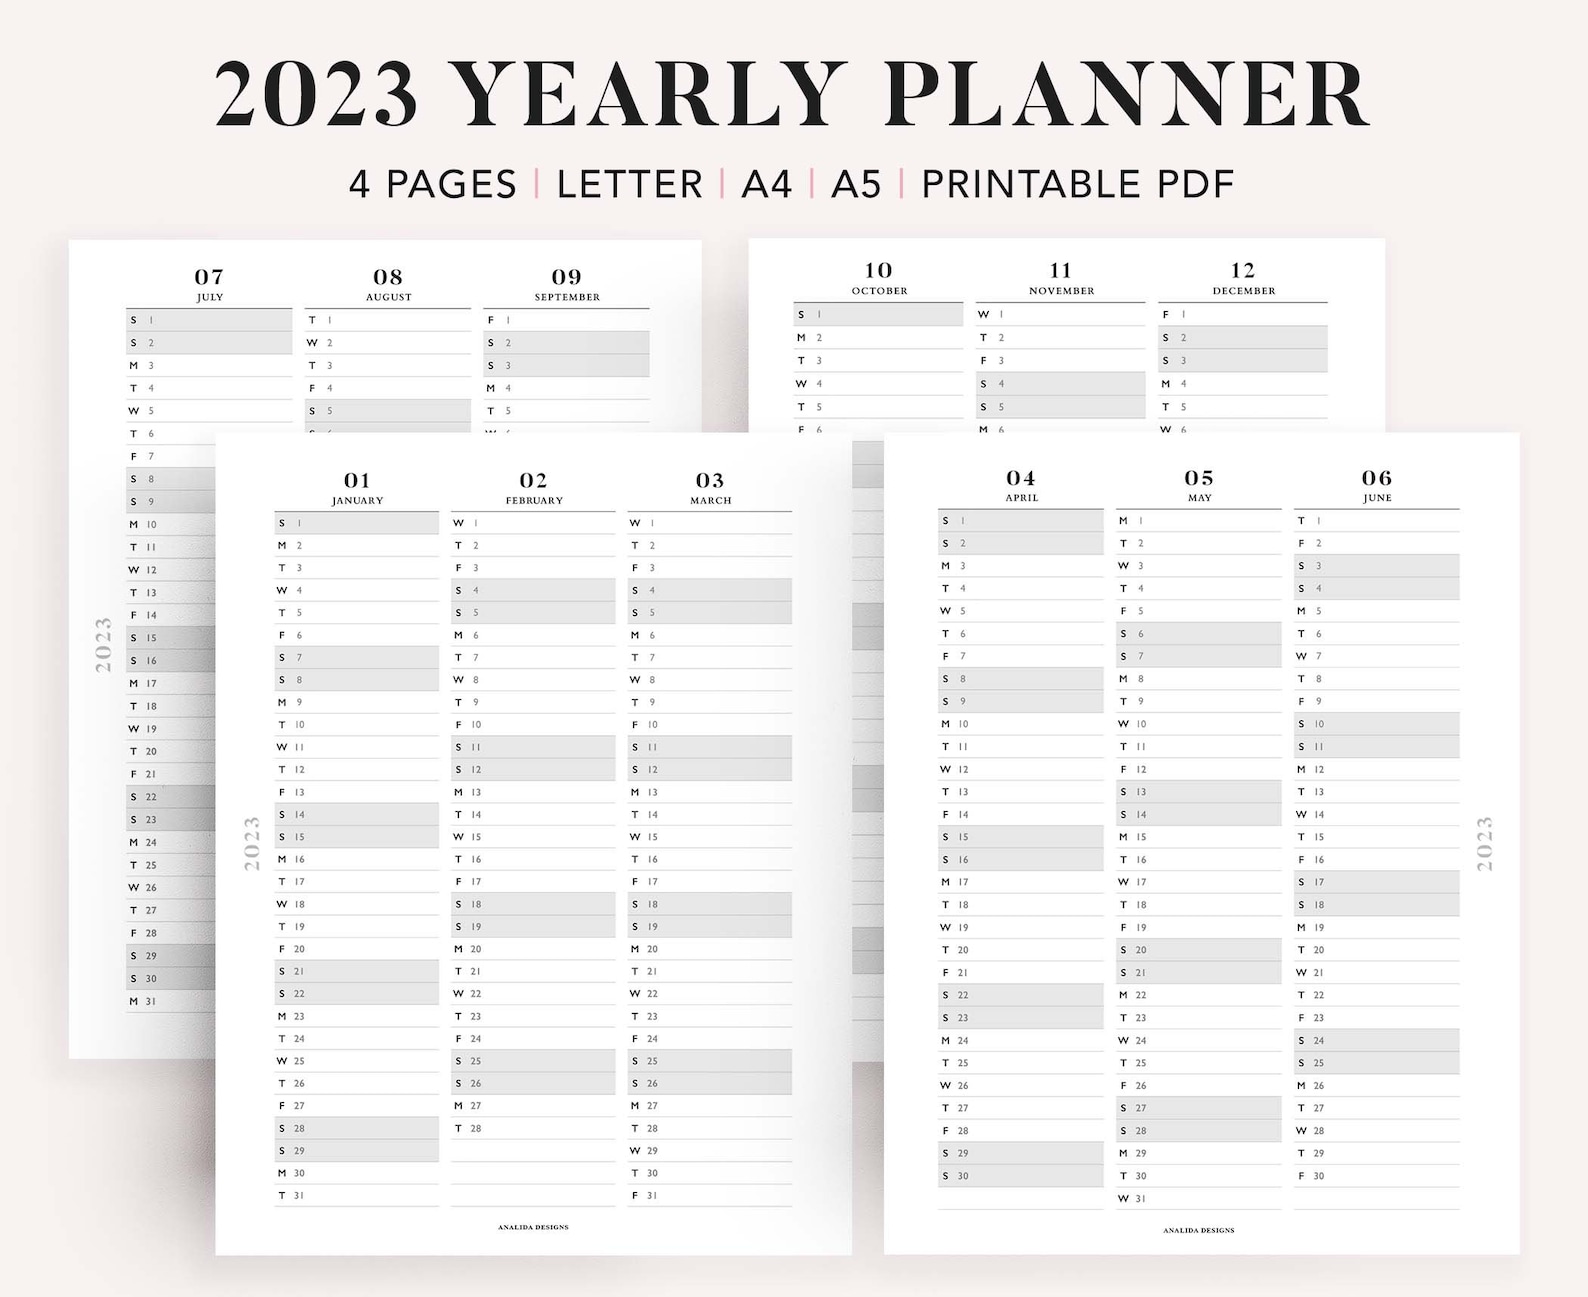 2023 quarterly calendar printable customize and print - quarterly calendars 2023 free printable word templates quarterly | printable calendar 2023 quarterly